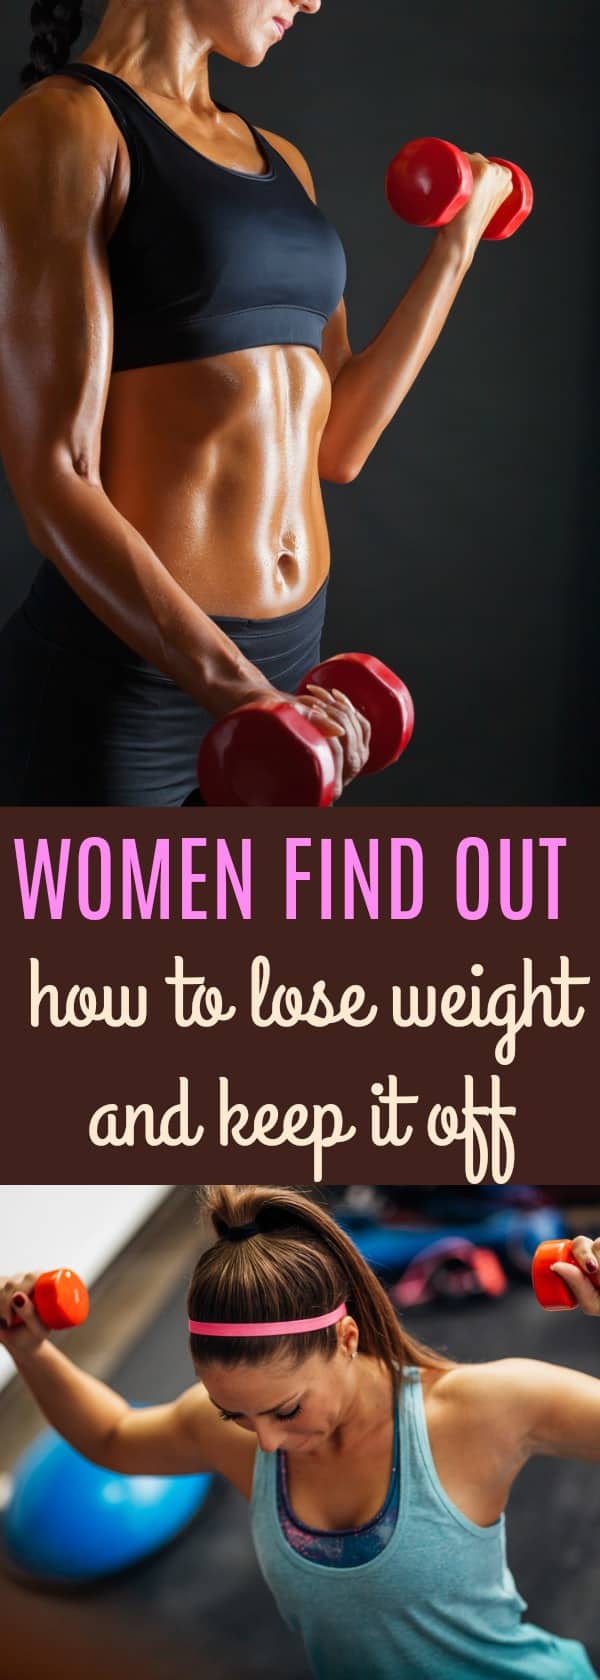 women lift weights